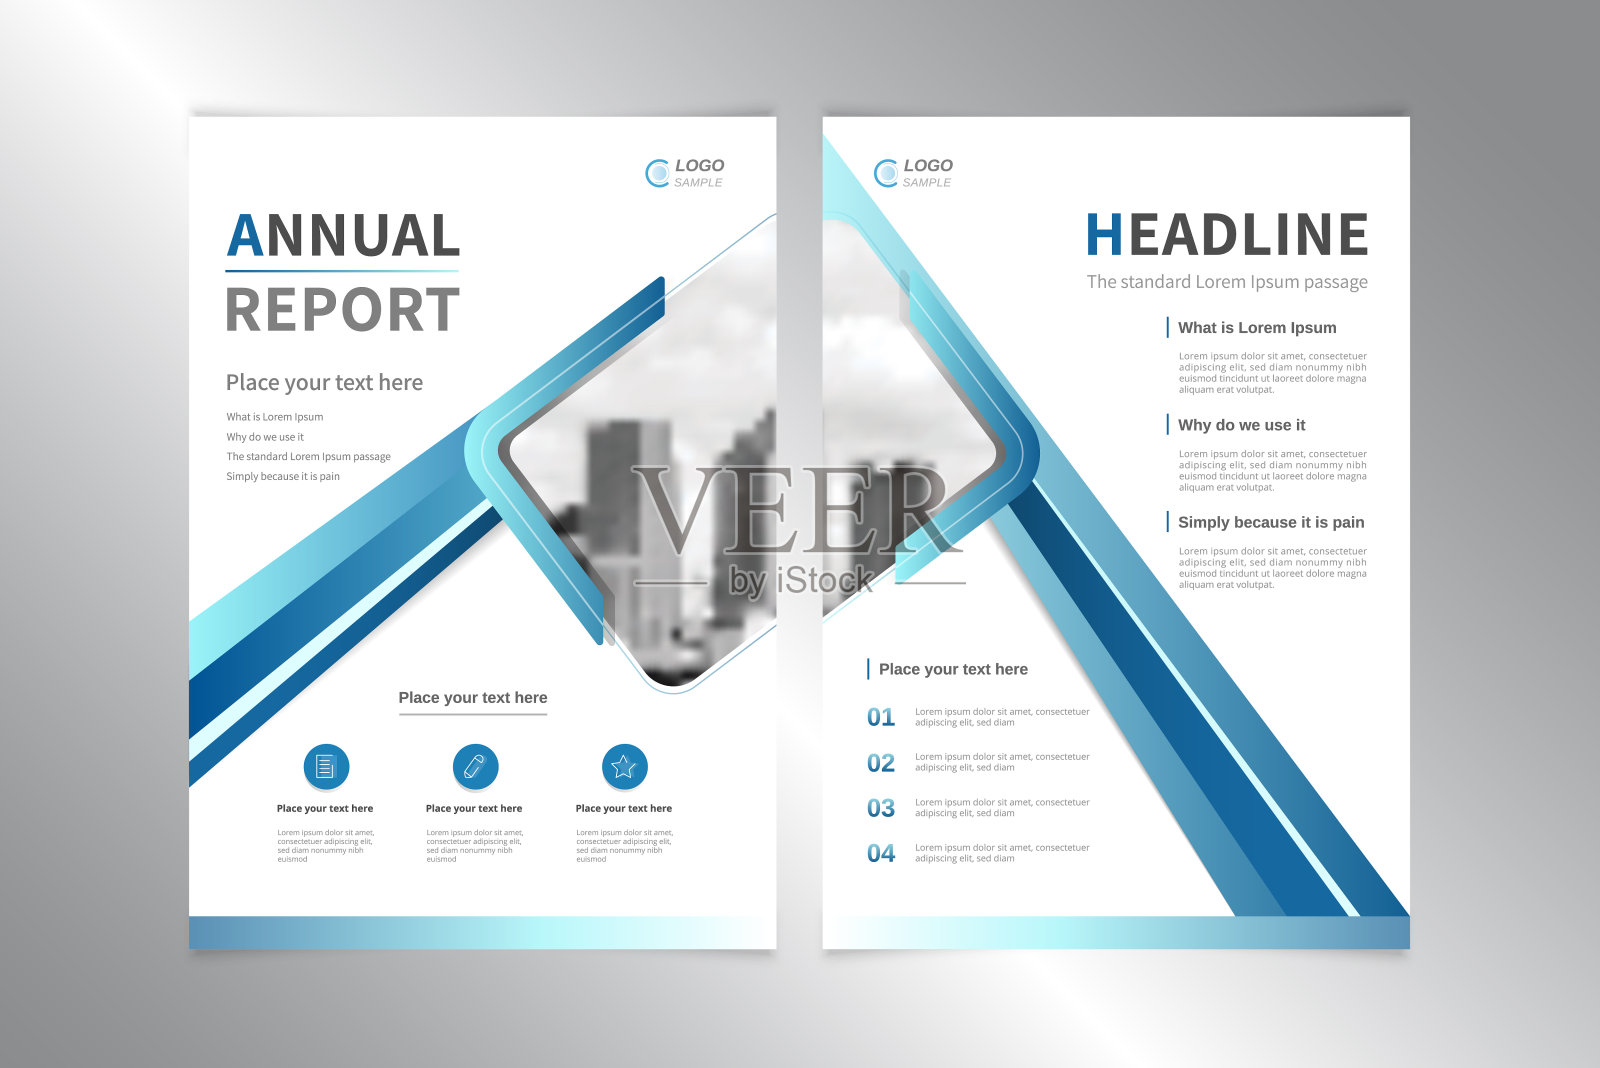 商业年度报告封面设计矢量模板在白色蓝色的主题设计模板素材